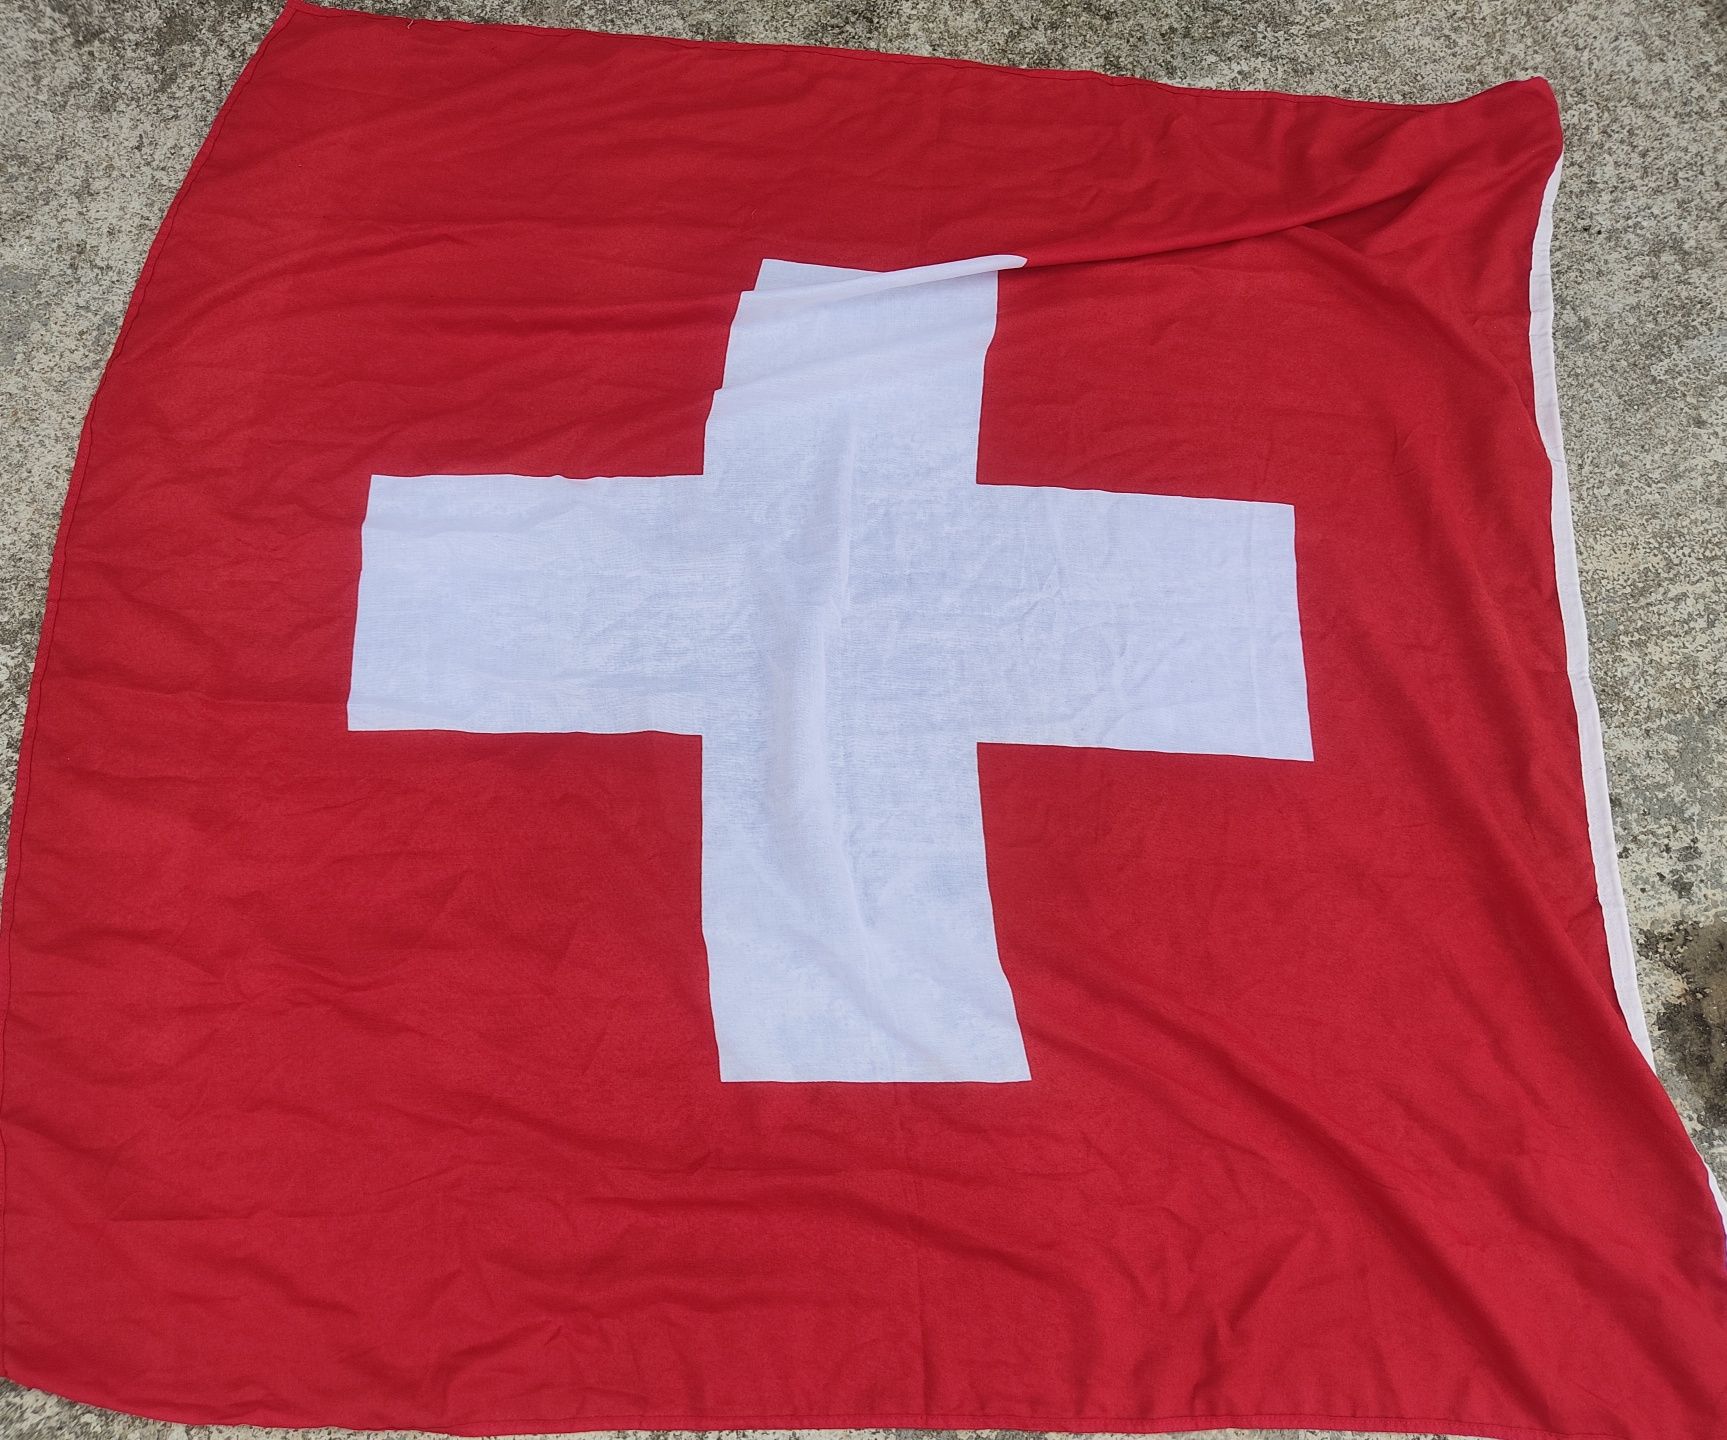 Selling Switzerland flag